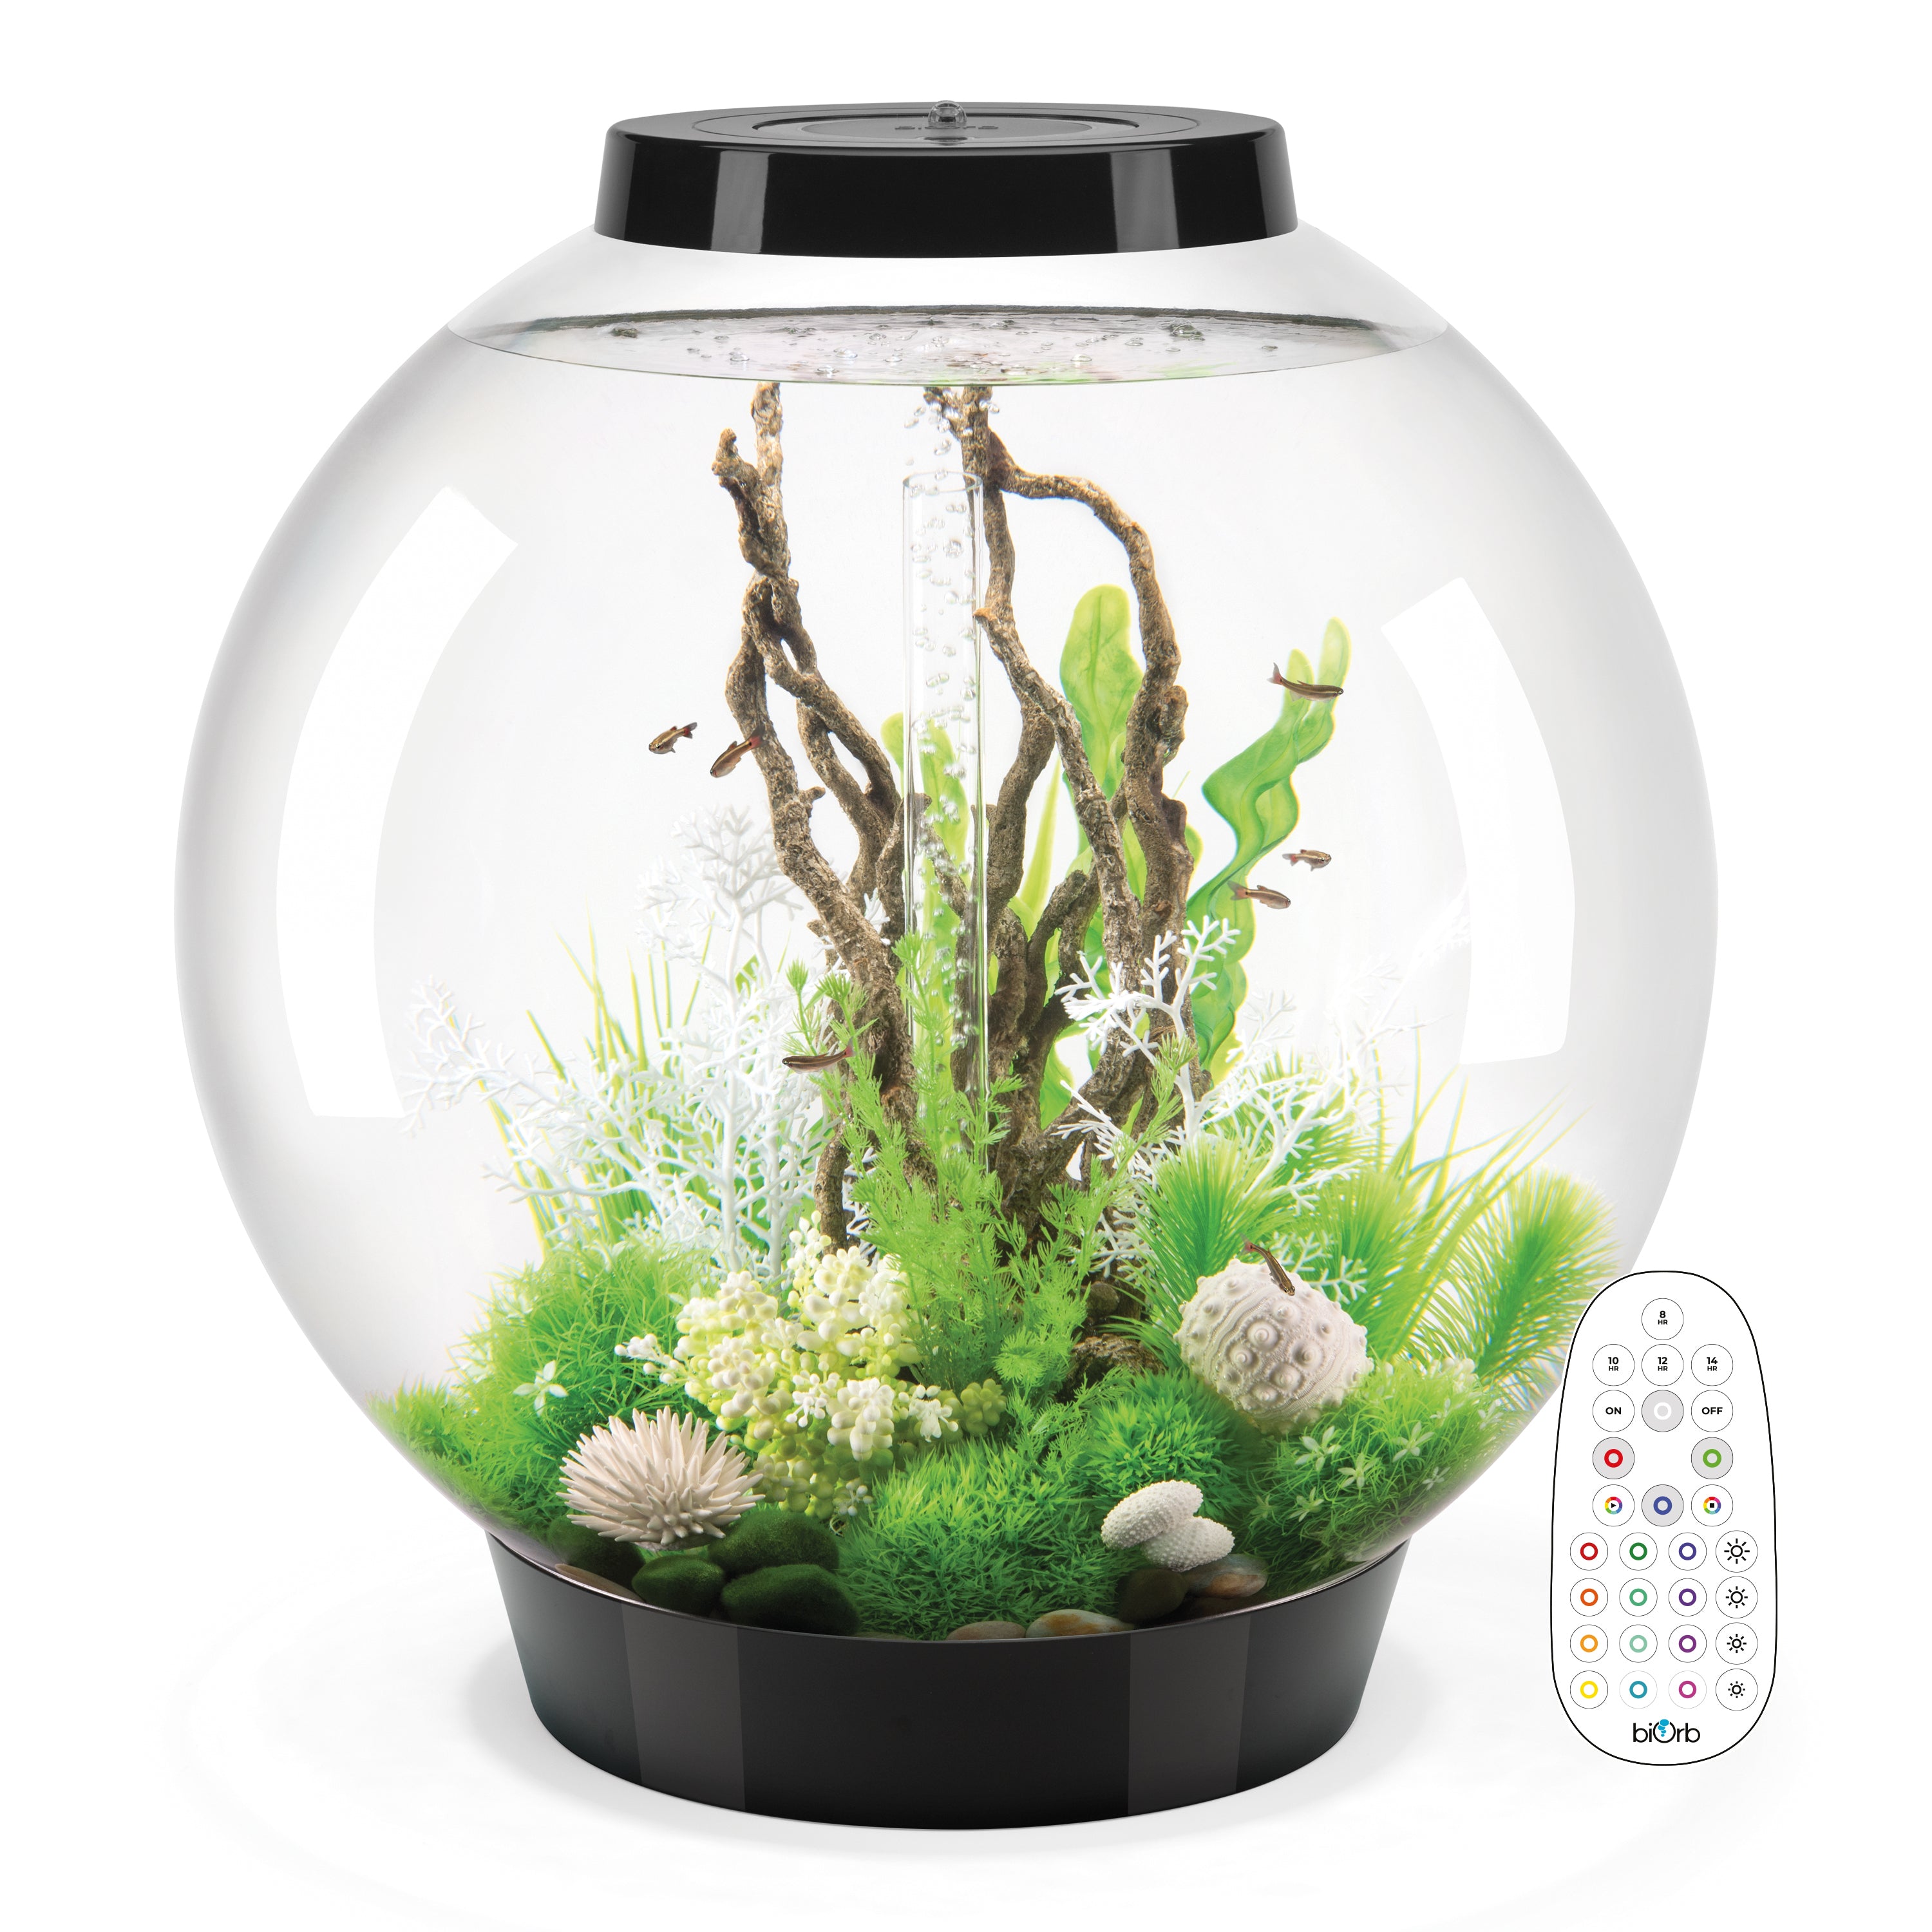 CLASSIC 105 Aquarium with Multi Colour LED light - remote control